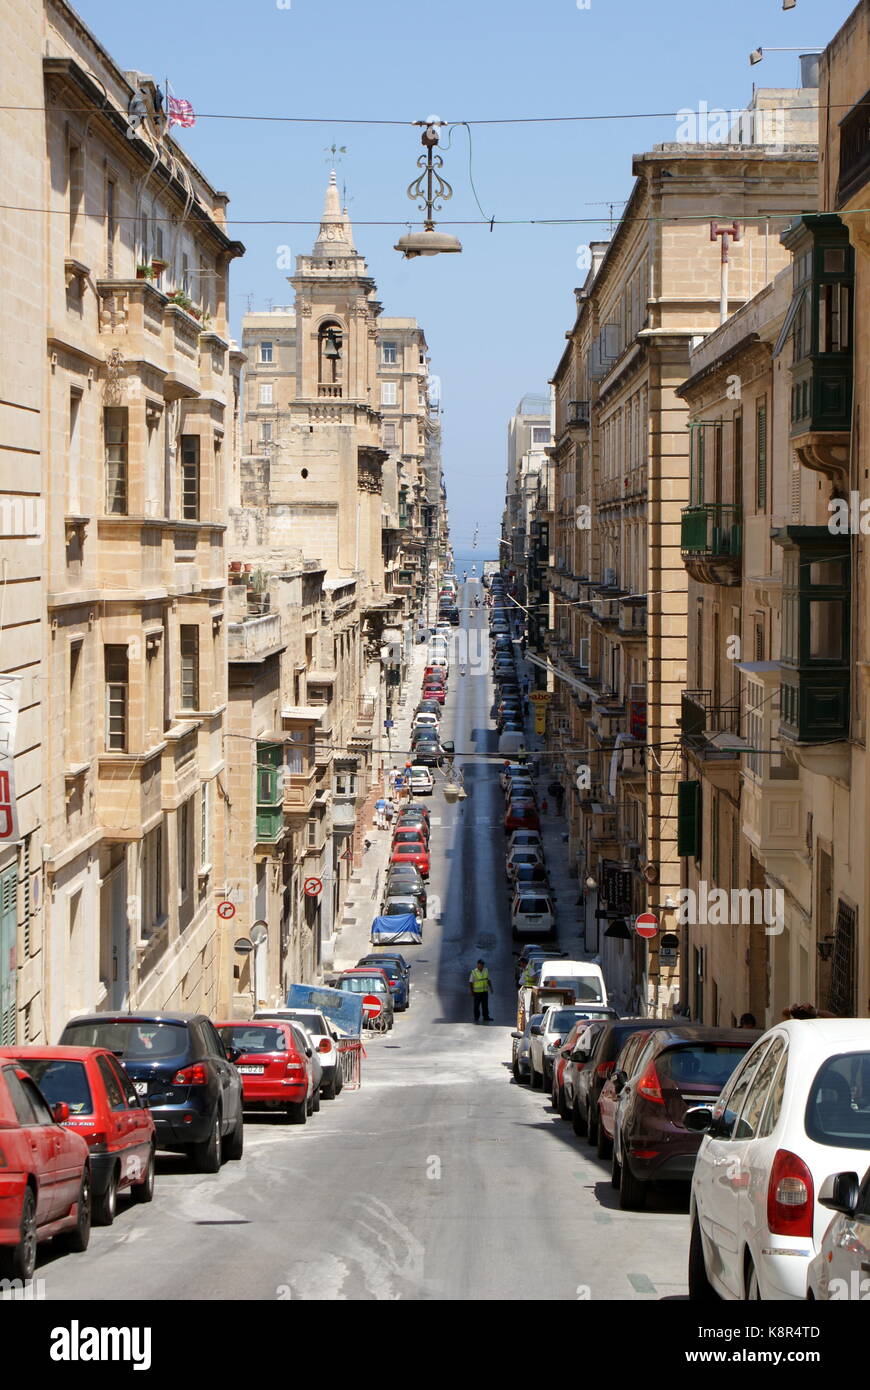 View down Old Bakery street (Triq L-ifran), Valletta, Malta Stock Photo